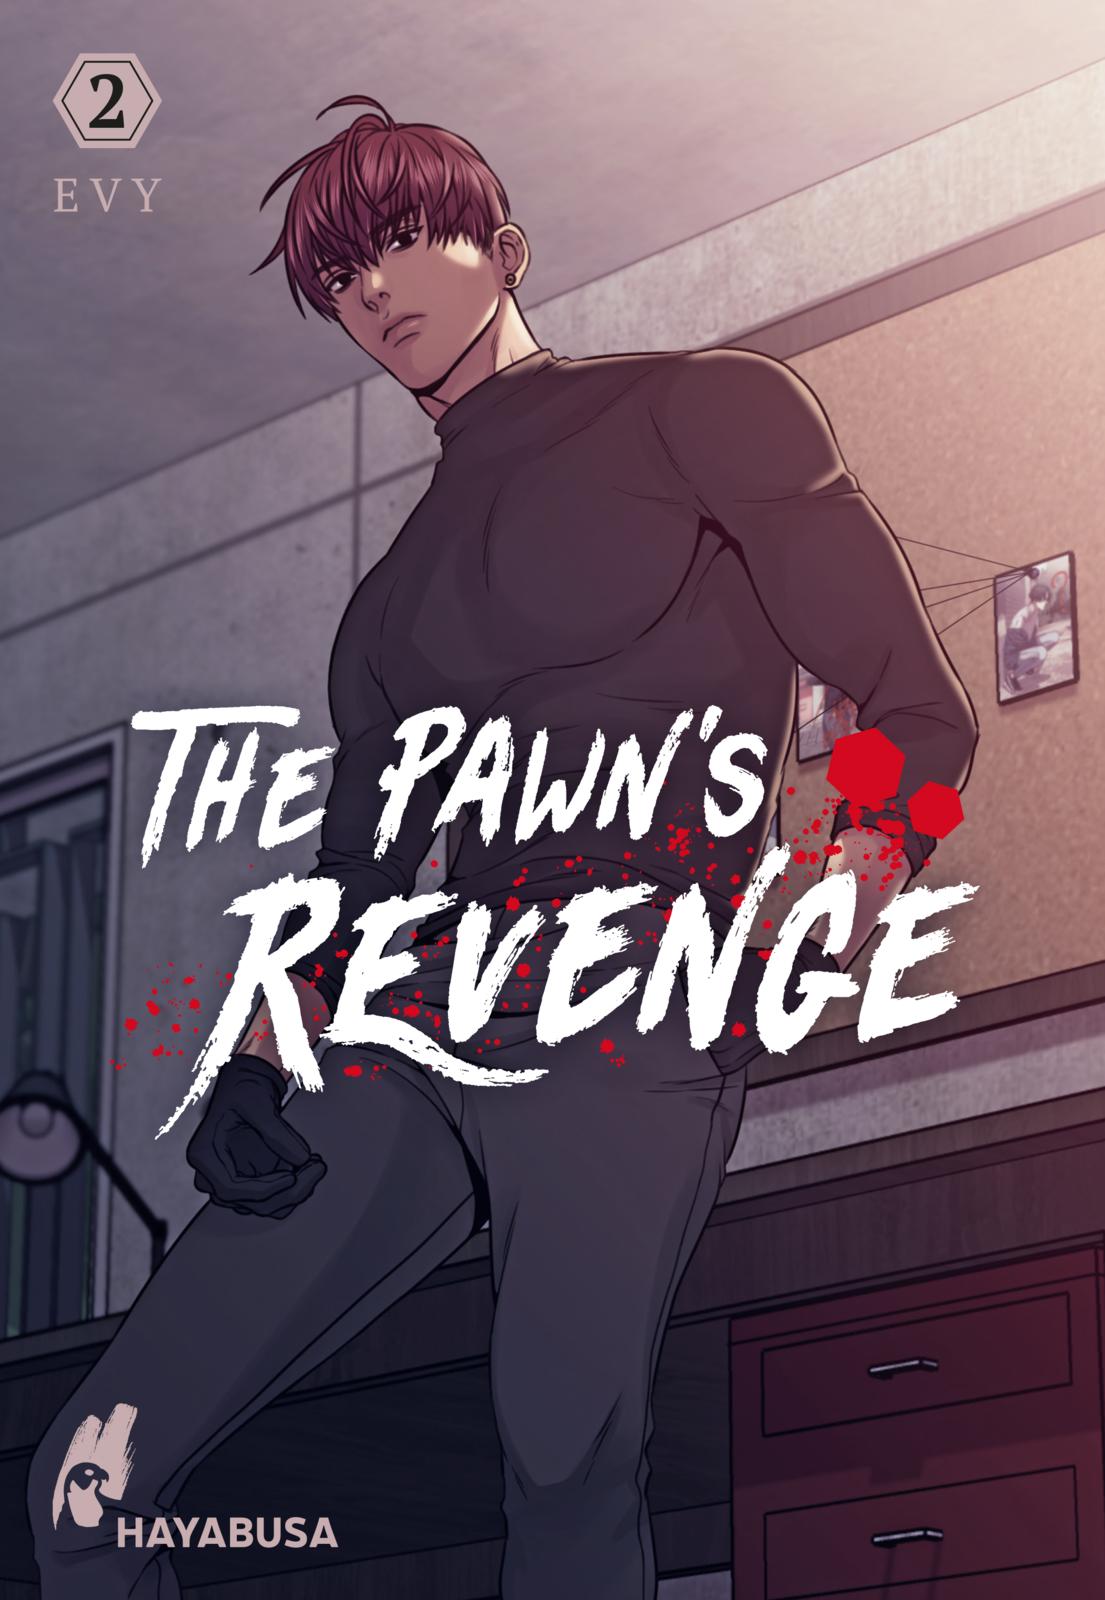 The Pawns Revenge